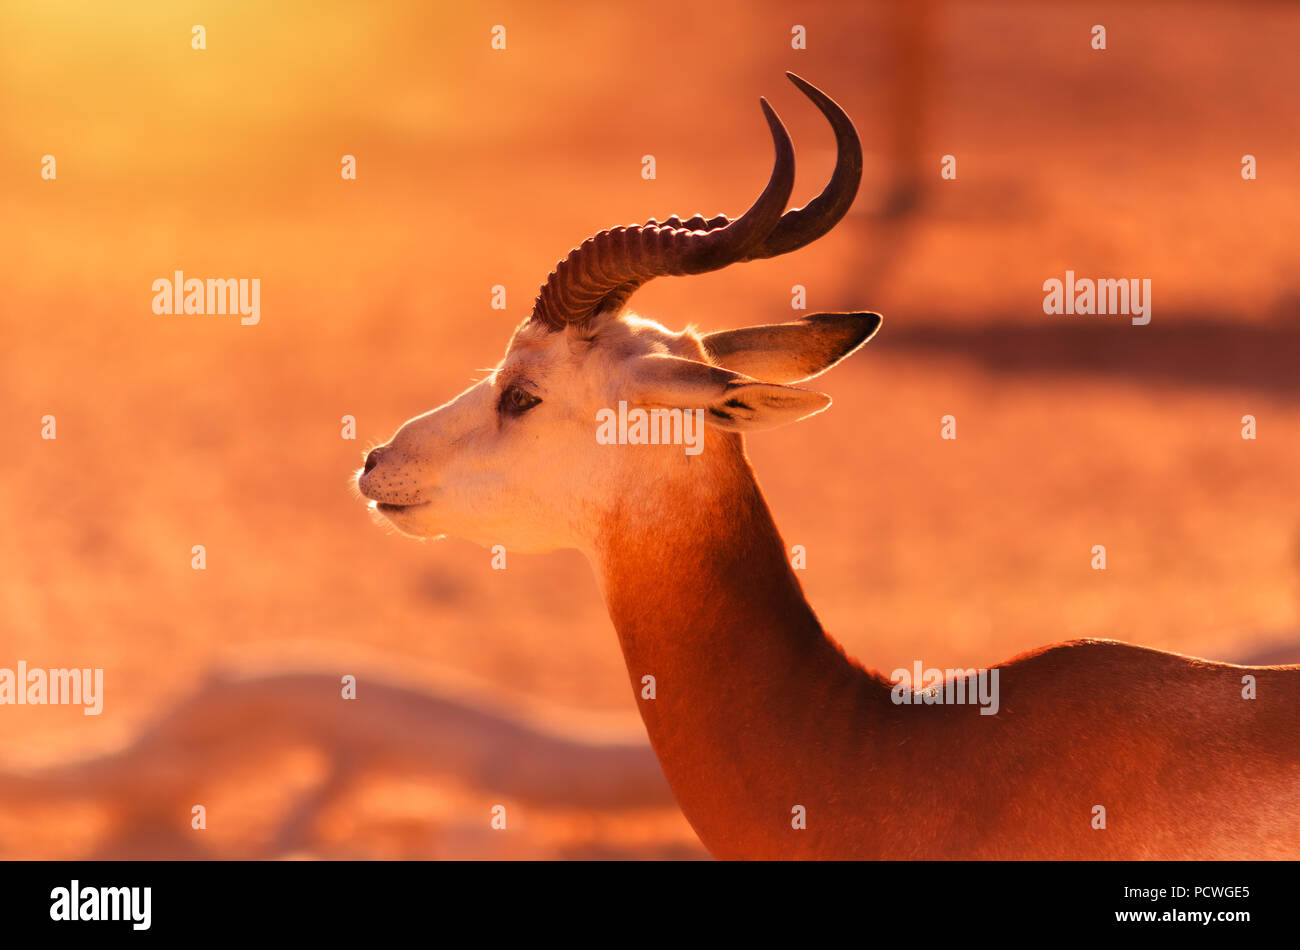 La gazelle dama, Gazelle addra, ou gazelle mhorr vivant sur l'habitat naturel dans le zoo d'Al Ain. Banque D'Images